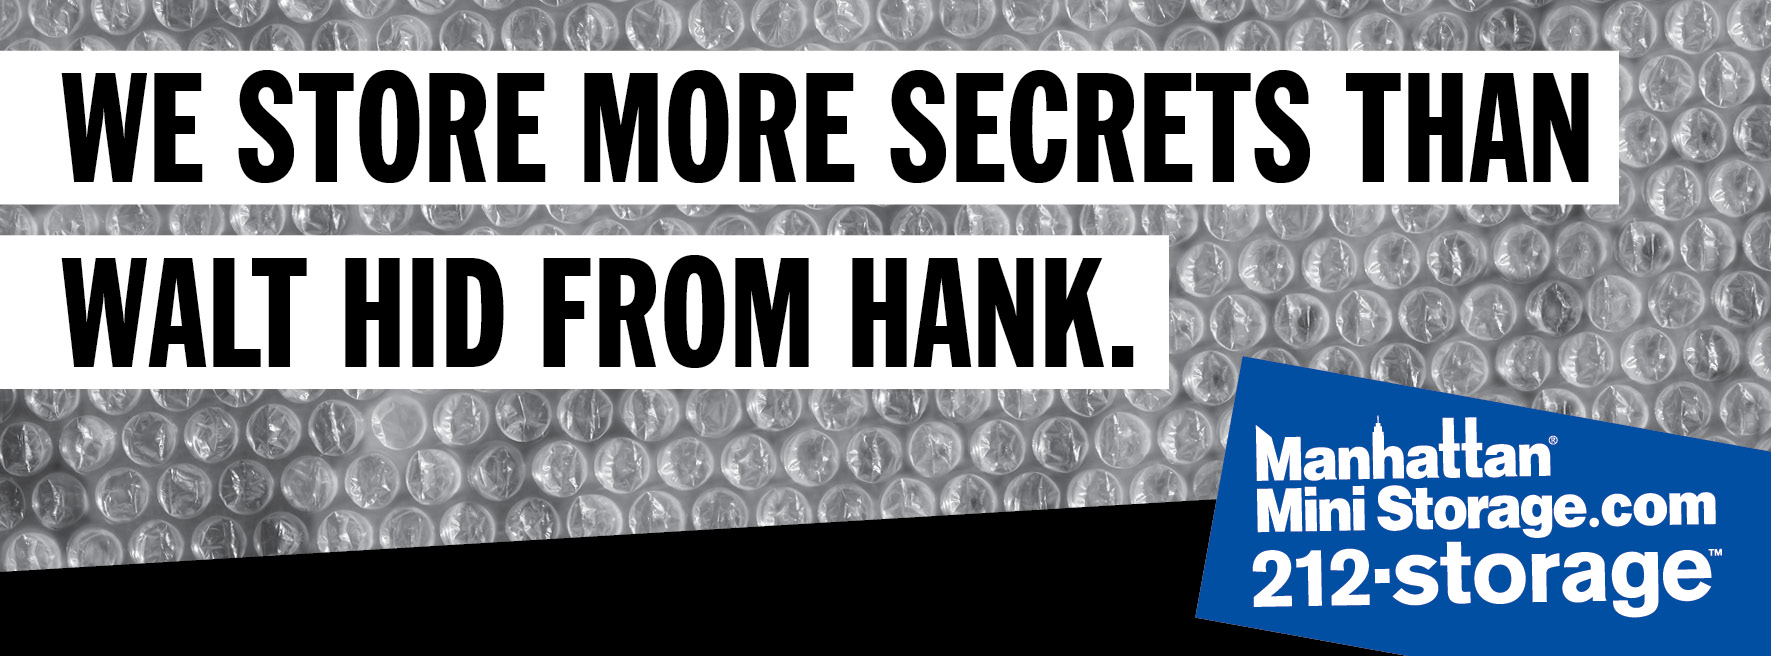 walt secrets from hank